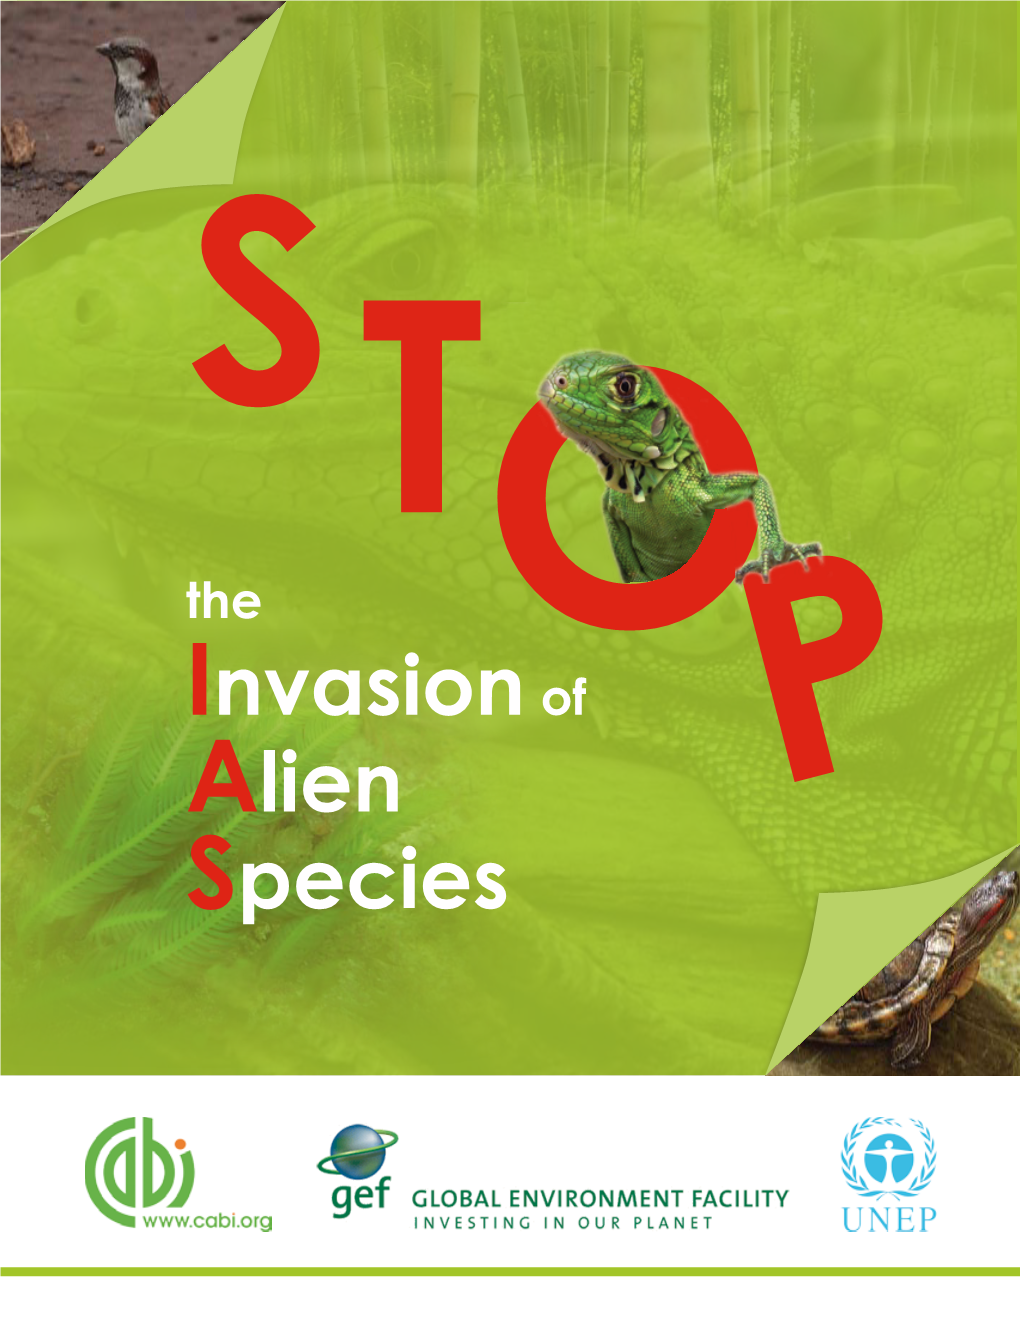 Stop the Invasion of Alien Species